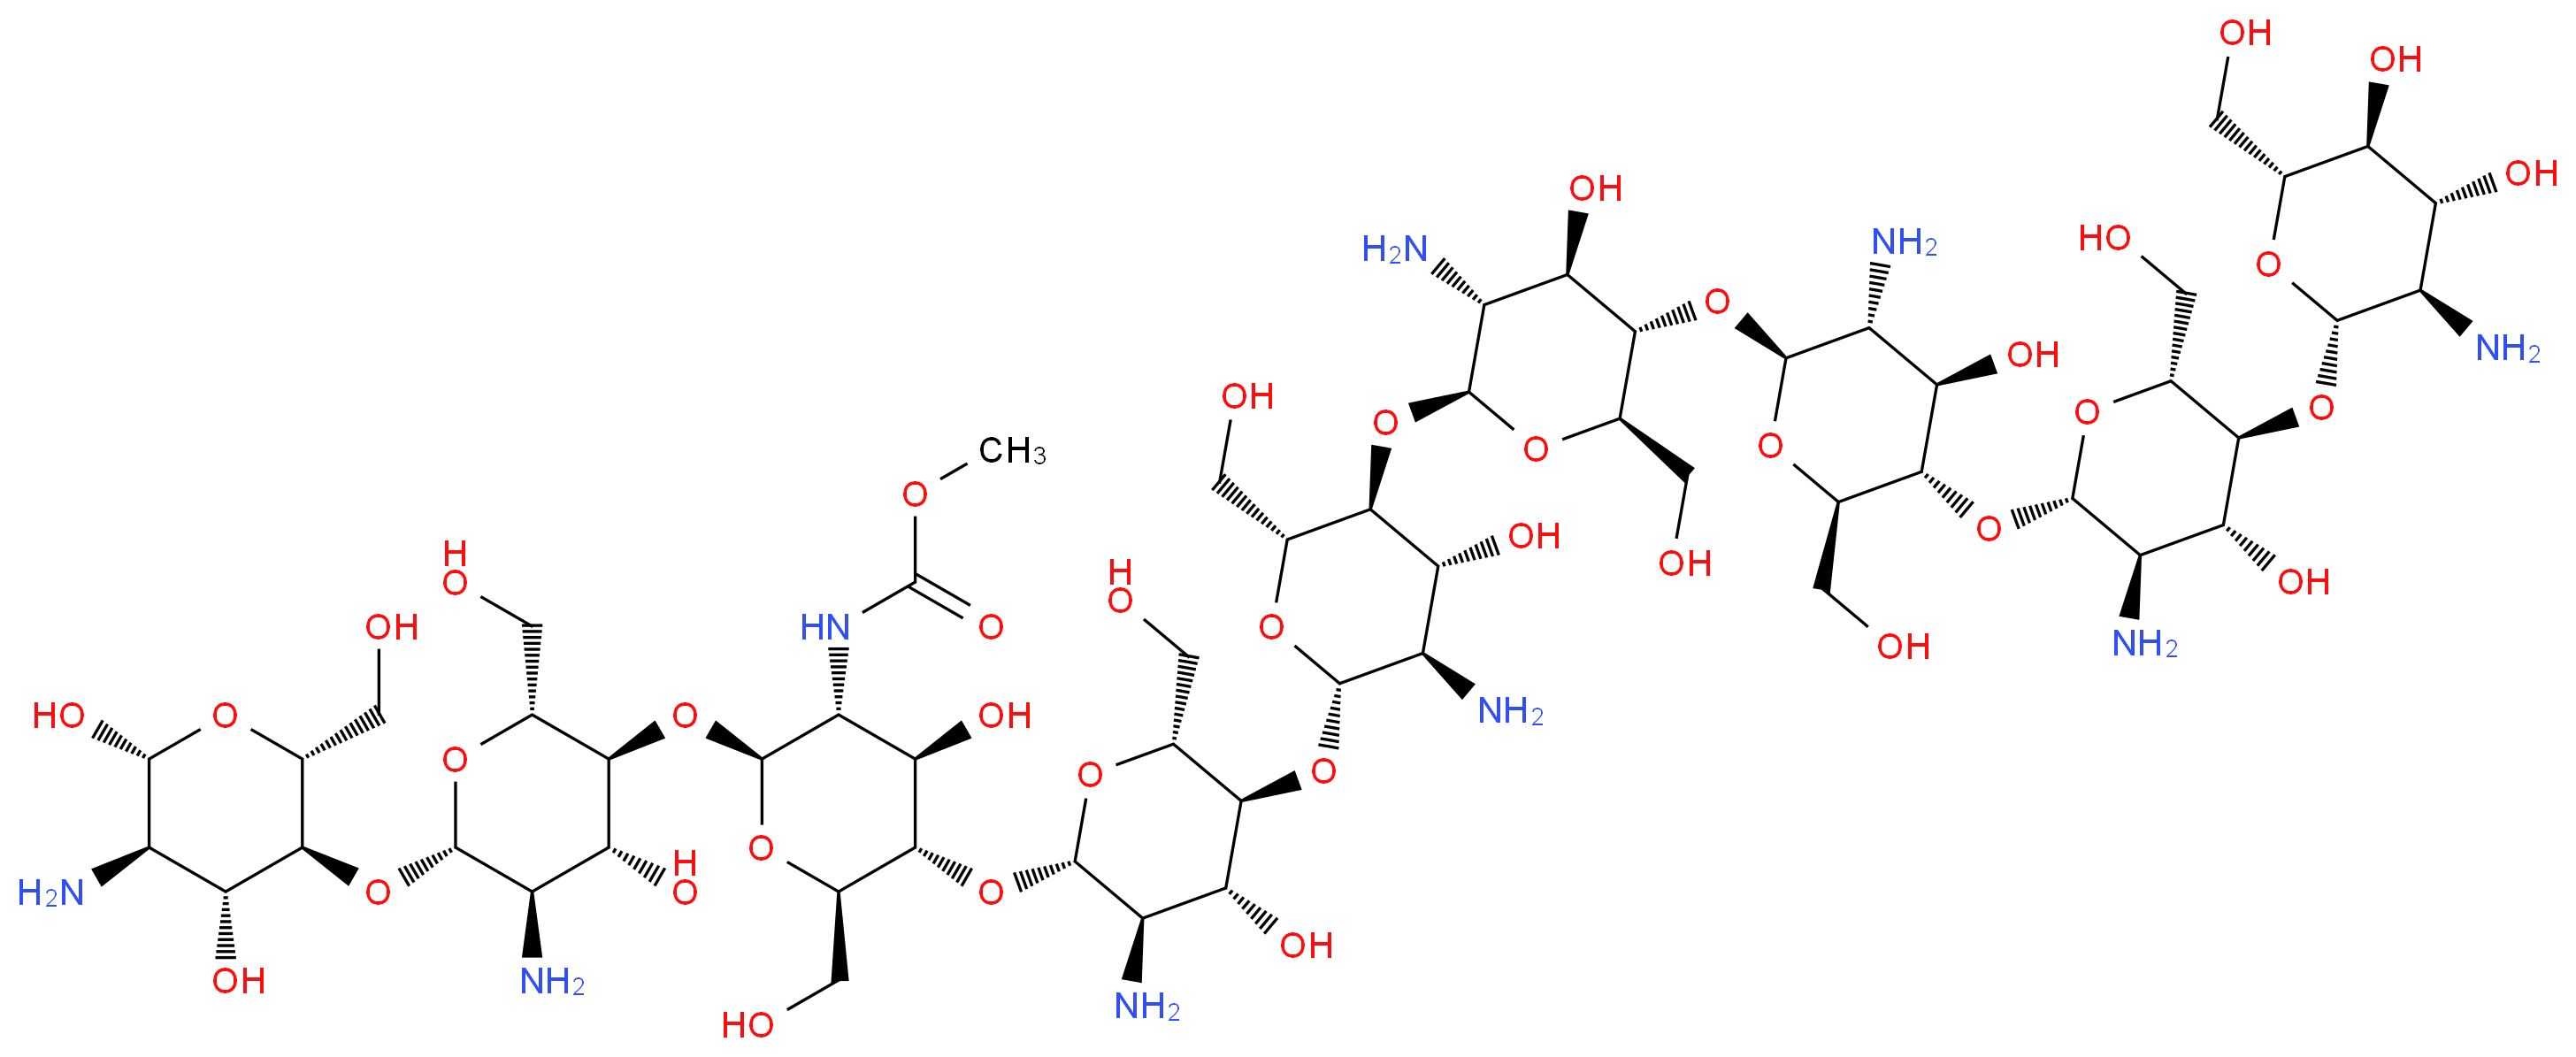 methyl N-[(2S,3R,4R,5S,6R)-5-{[(2S,3R,4R,5S,6R)-3-amino-5-{[(2S,3R,4R,5S,6R)-3-amino-5-{[(2S,3R,4R,5S,6R)-3-amino-5-{[(2S,3R,4R,5S,6R)-3-amino-5-{[(2S,3R,4R,5S,6R)-3-amino-5-{[(2S,3R,4R,5S,6R)-3-amino-4,5-dihydroxy-6-(hydroxymethyl)oxan-2-yl]oxy}-4-hydroxy-6-(hydroxymethyl)oxan-2-yl]oxy}-4-hydroxy-6-(hydroxymethyl)oxan-2-yl]oxy}-4-hydroxy-6-(hydroxymethyl)oxan-2-yl]oxy}-4-hydroxy-6-(hydroxymethyl)oxan-2-yl]oxy}-4-hydroxy-6-(hydroxymethyl)oxan-2-yl]oxy}-2-{[(2R,3S,4R,5R,6S)-5-amino-6-{[(2R,3S,4R,5R,6R)-5-amino-4,6-dihydroxy-2-(hydroxymethyl)oxan-3-yl]oxy}-4-hydroxy-2-(hydroxymethyl)oxan-3-yl]oxy}-4-hydroxy-6-(hydroxymethyl)oxan-3-yl]carbamate_分子结构_CAS_9012-76-4